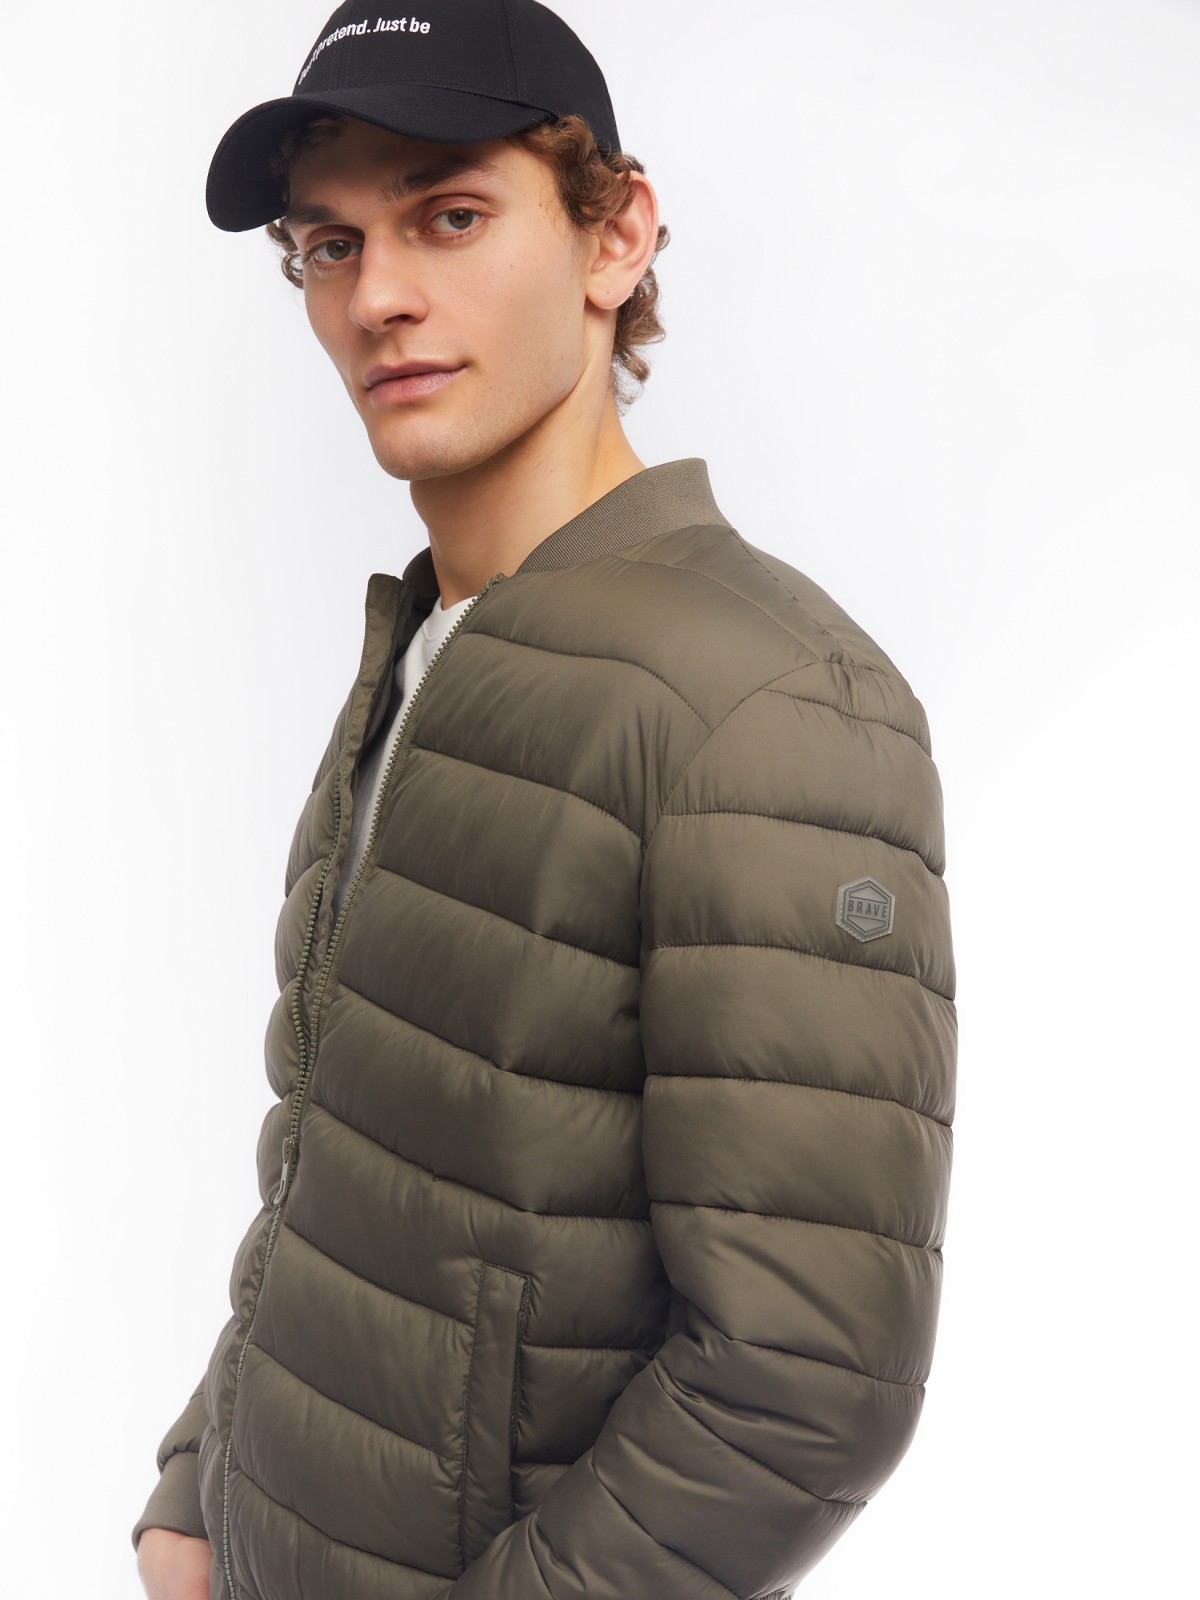 Лёгкая утеплённая куртка-бомбер с воротником-стойкой zolla 014125102104, цвет хаки, размер M - фото 3